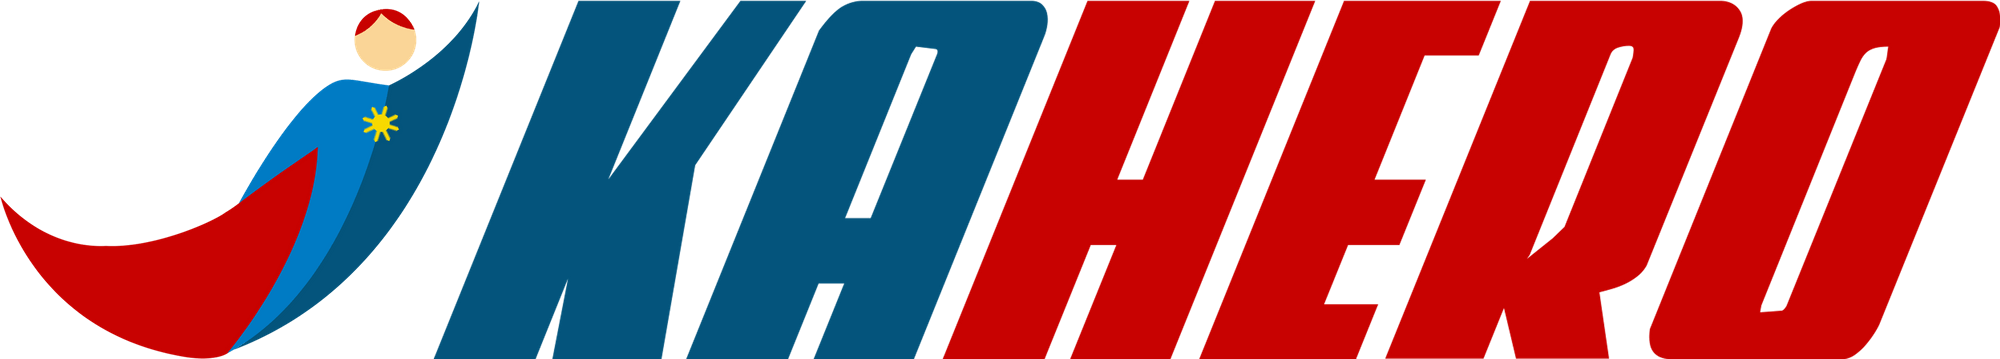 kahero logo